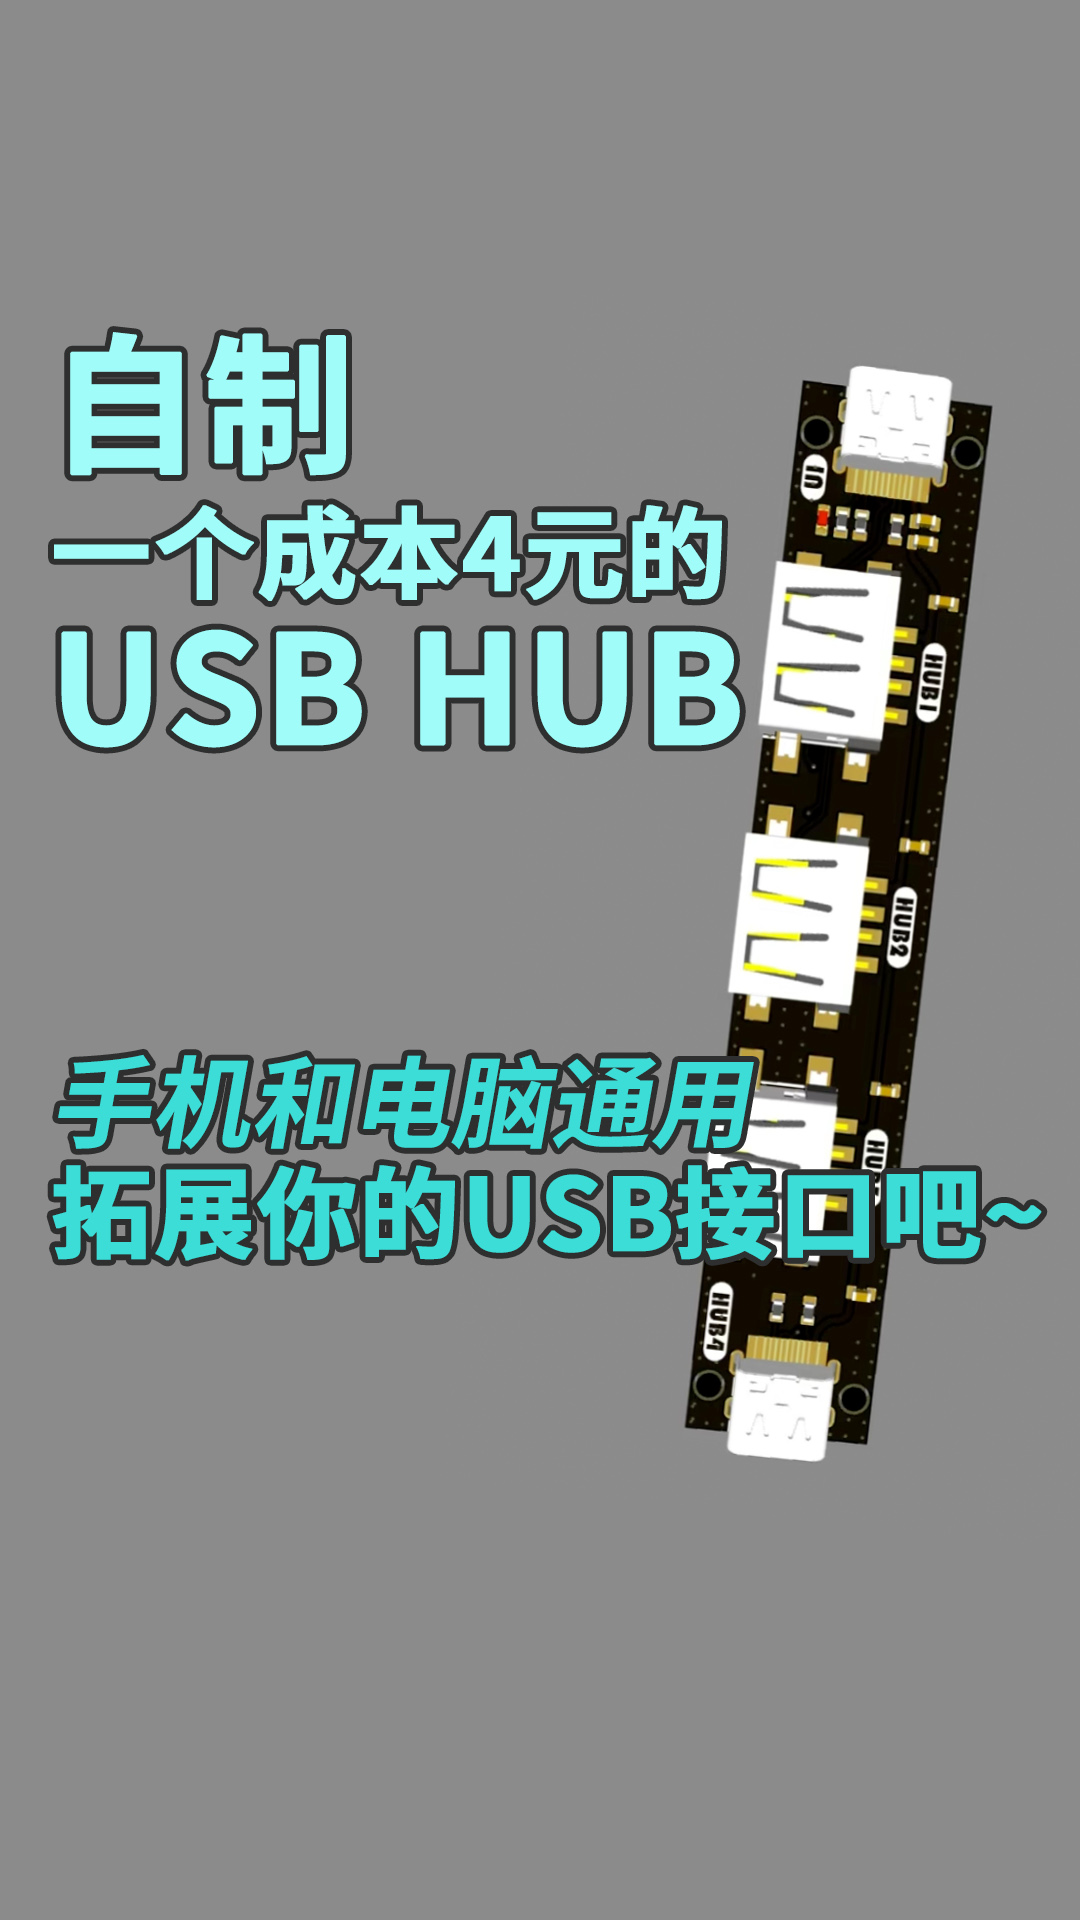 自制一个成本4元的USB HUB，手机和电脑通用，拓展你的USB接口吧~